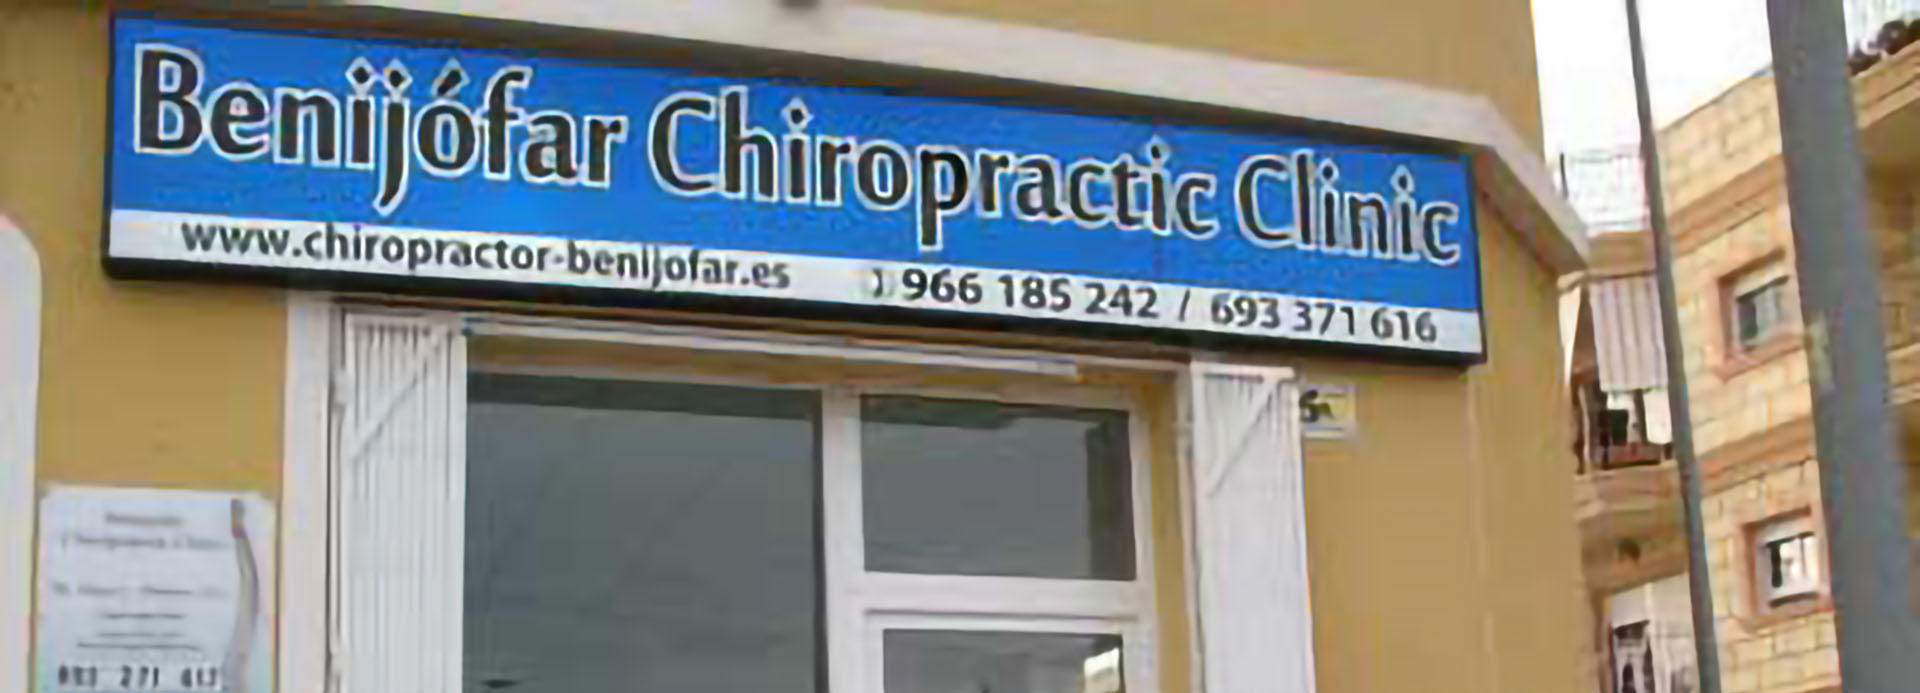 Benijofar Chiropractic Clinic Svenska